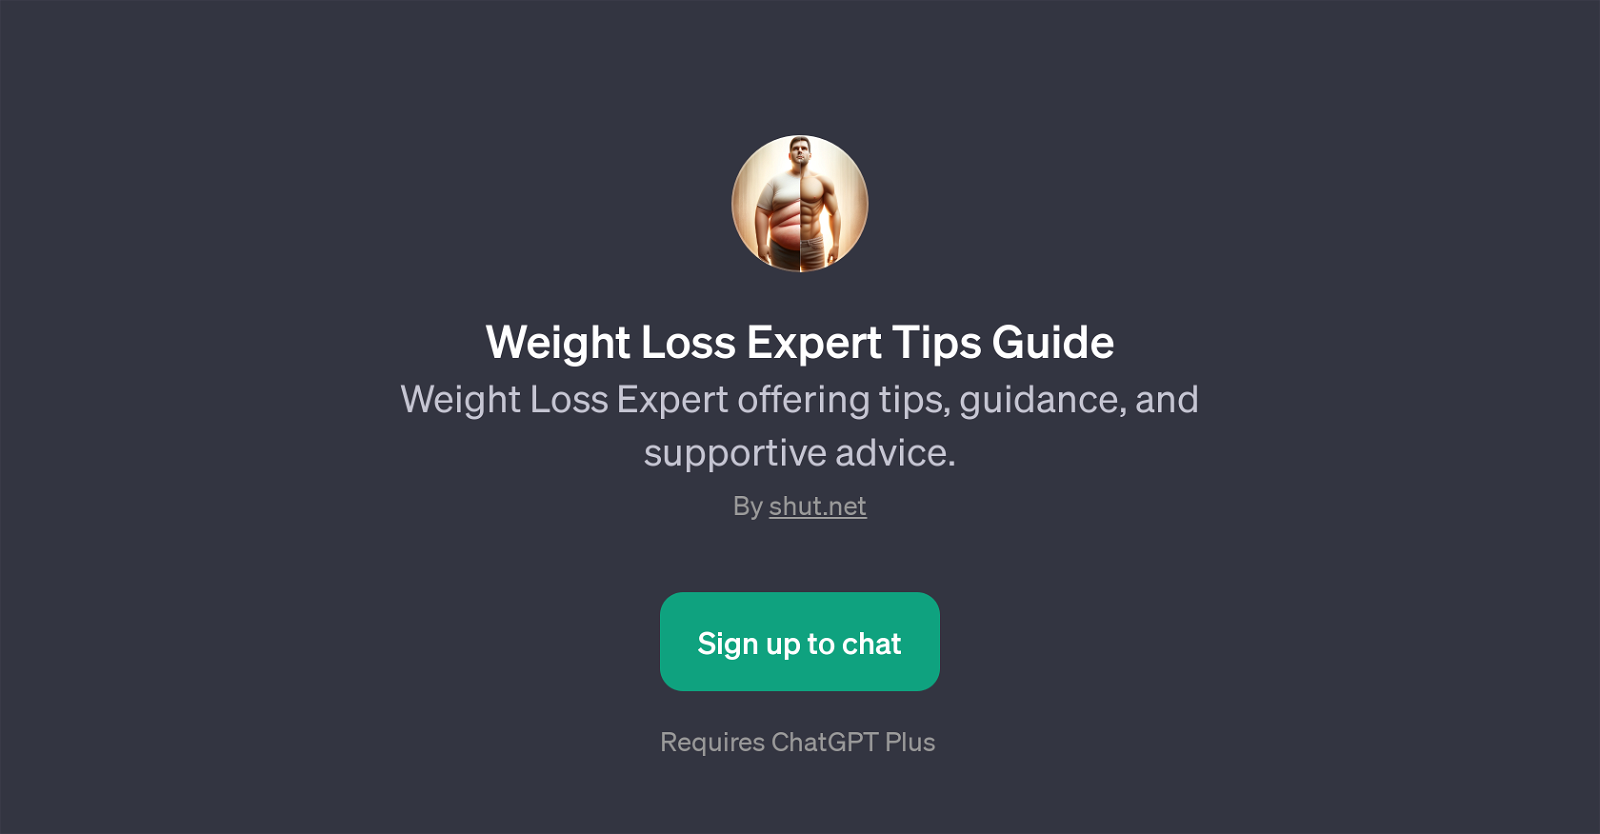 Weight Loss Expert Tips Guide website